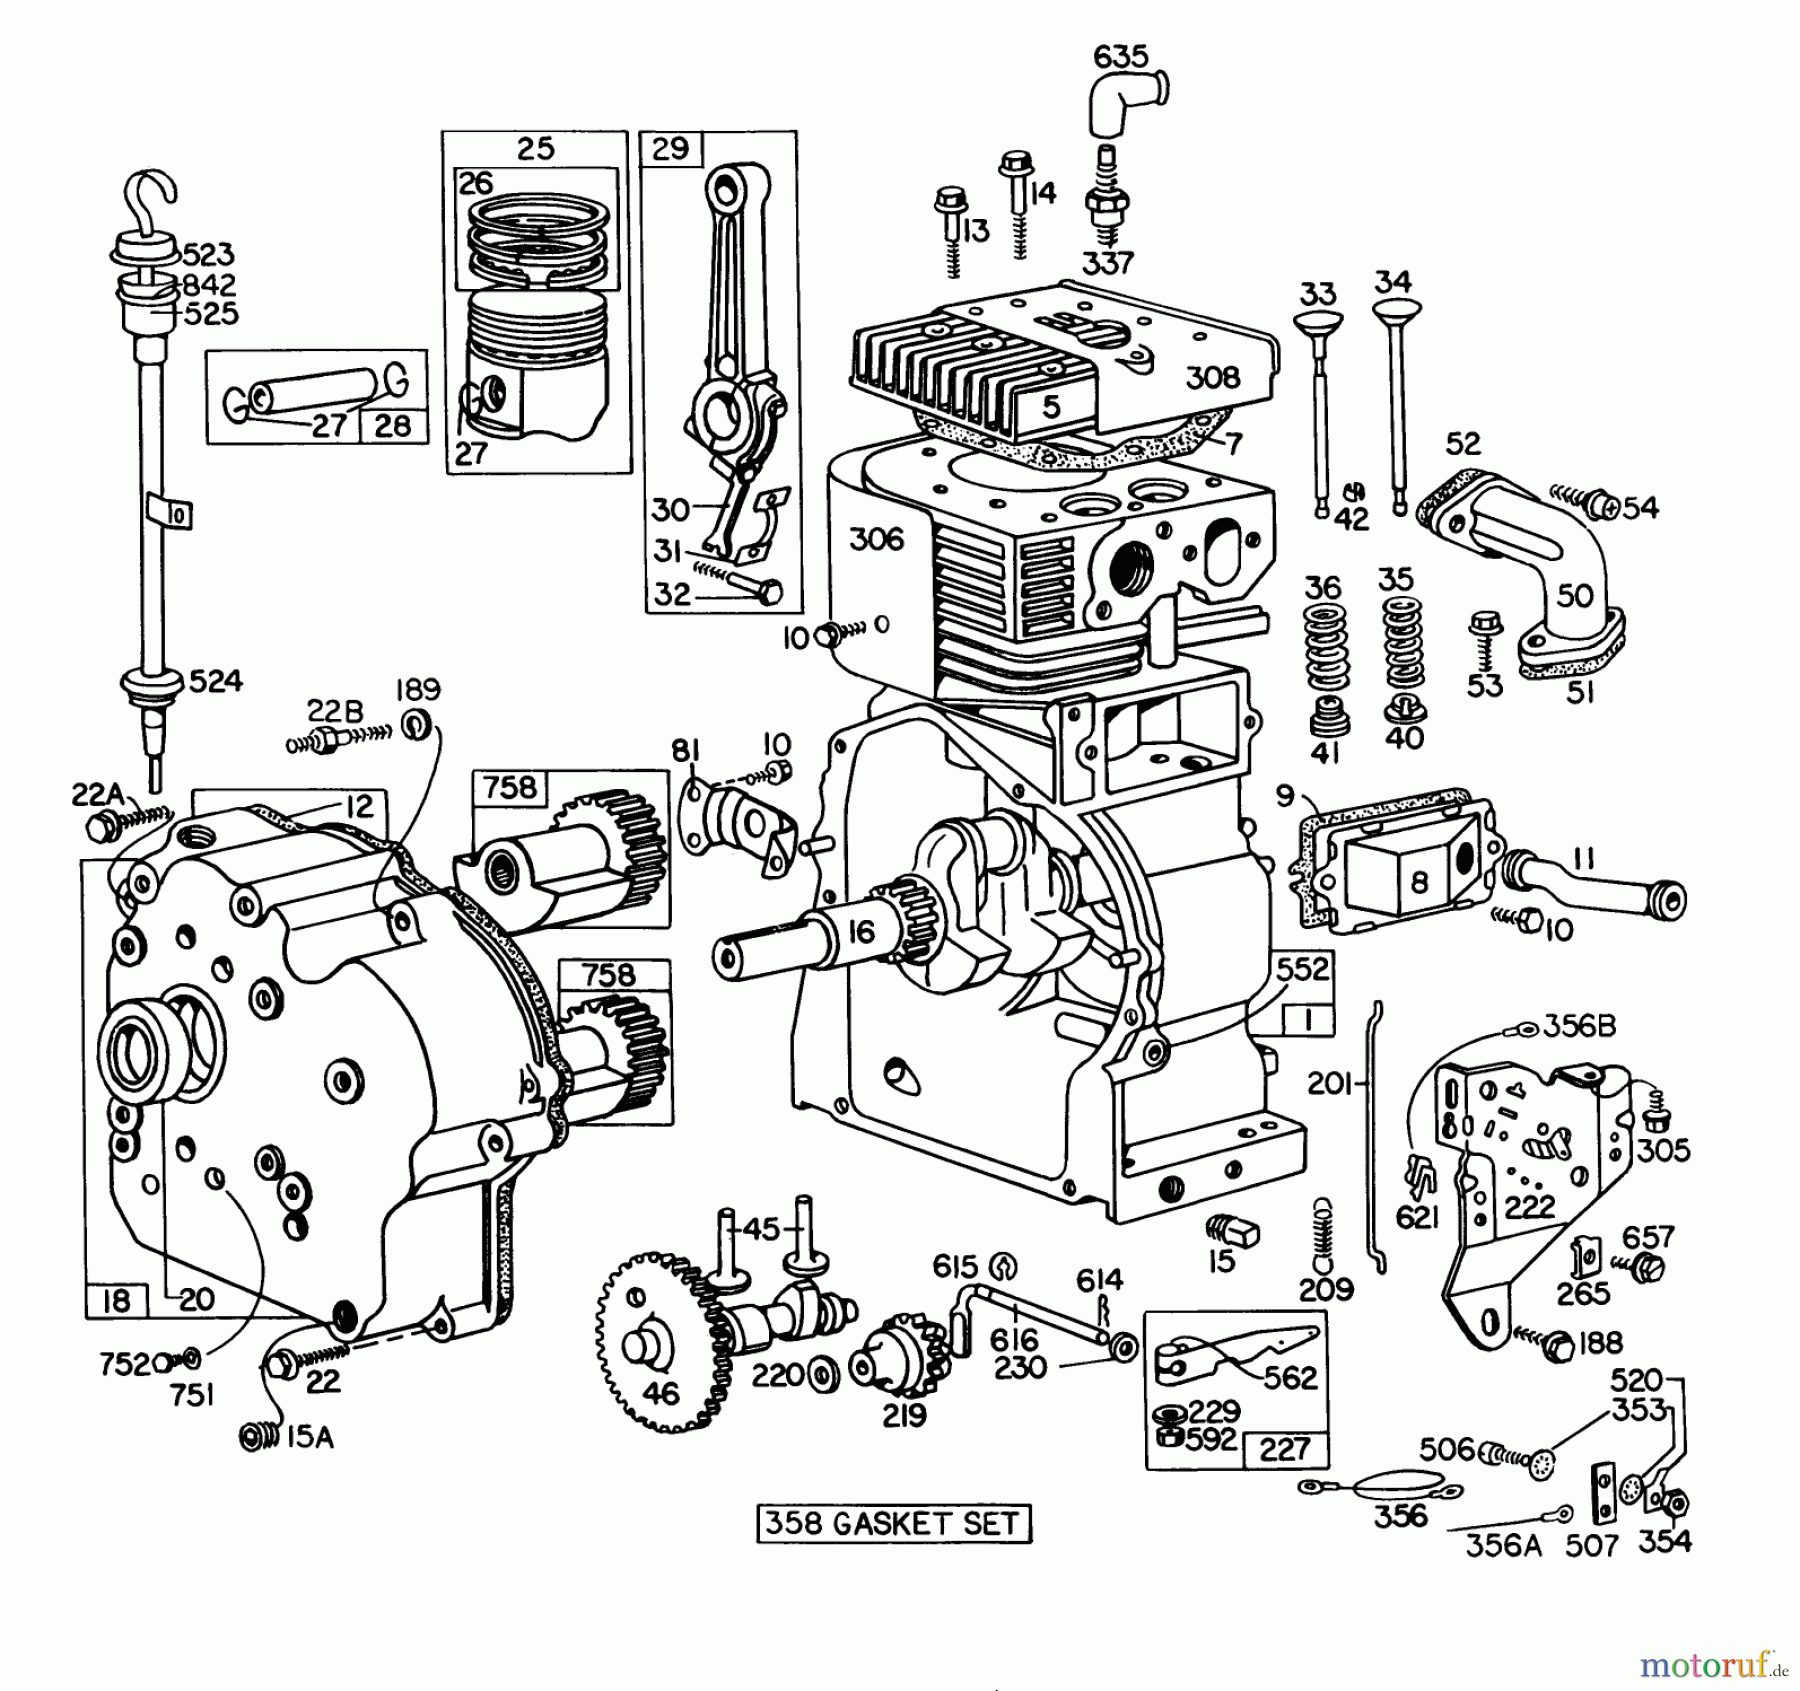  Toro Neu Snow Blowers/Snow Throwers Seite 1 31995 (1032) - Toro 1032 Snowthrower, 1977 (7000001-7999999) ENGINE BRIGGS & STRATTON MODEL NO. 251417 TYPE NO. 0173-01 #1